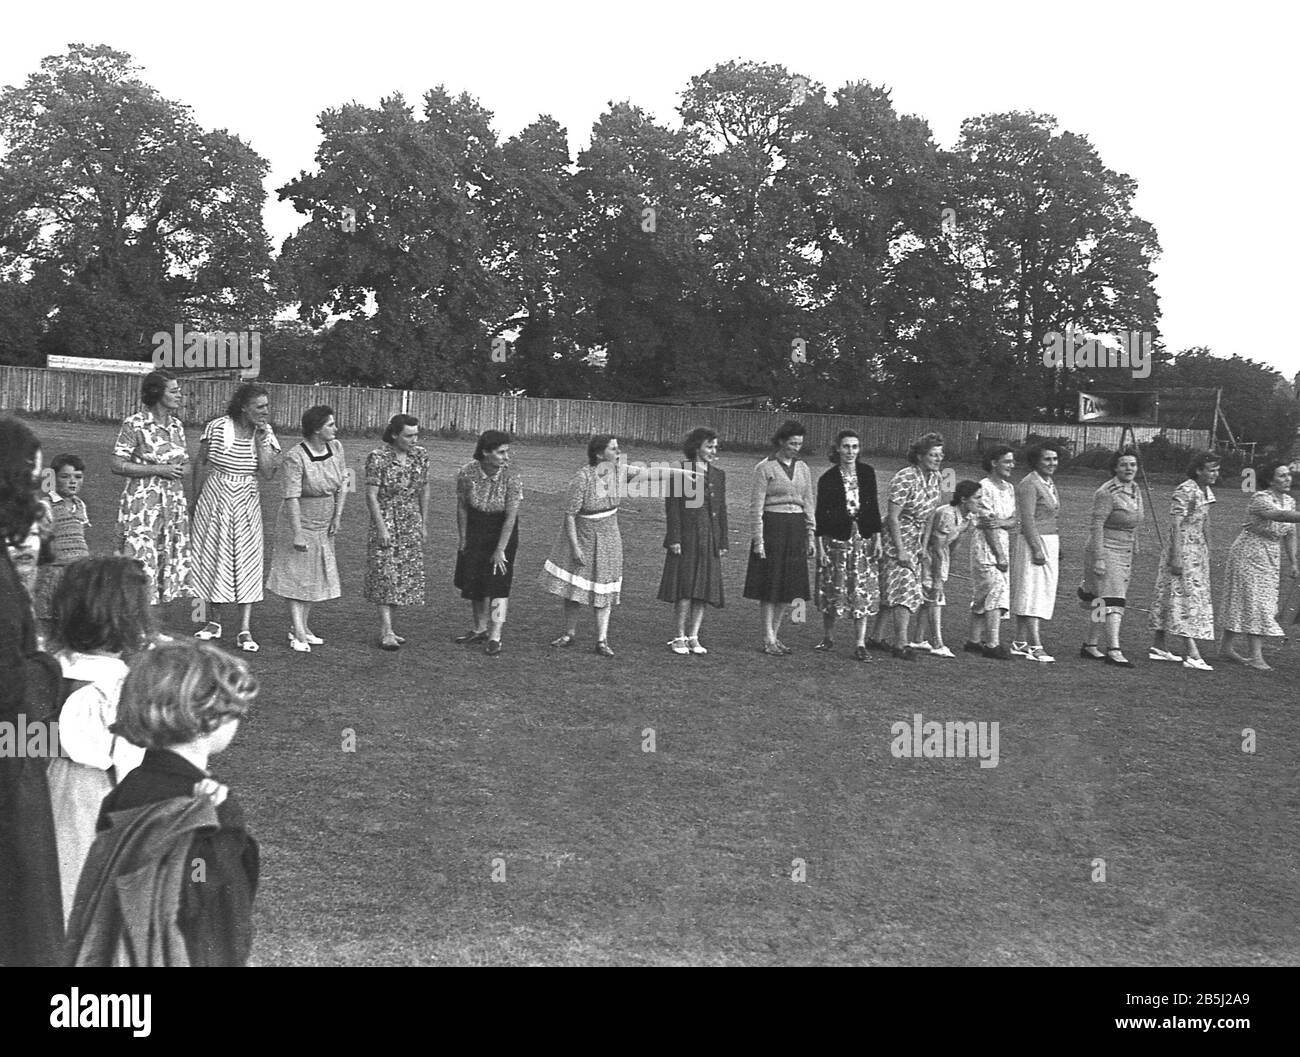 1950er Jahre, historisch, beobachtet von lokalen Kindern, einer Gruppe von Damen, Müttern und Hausfrauen, die die langen Kleider der Ära mit Blumenmuster tragen, auf einem Feld aneinandergereiht sind, bereit für ein kurzes Laufrennen oder Sprint, als Teil eines Community-Spaßtages, England, Großbritannien. Stockfoto